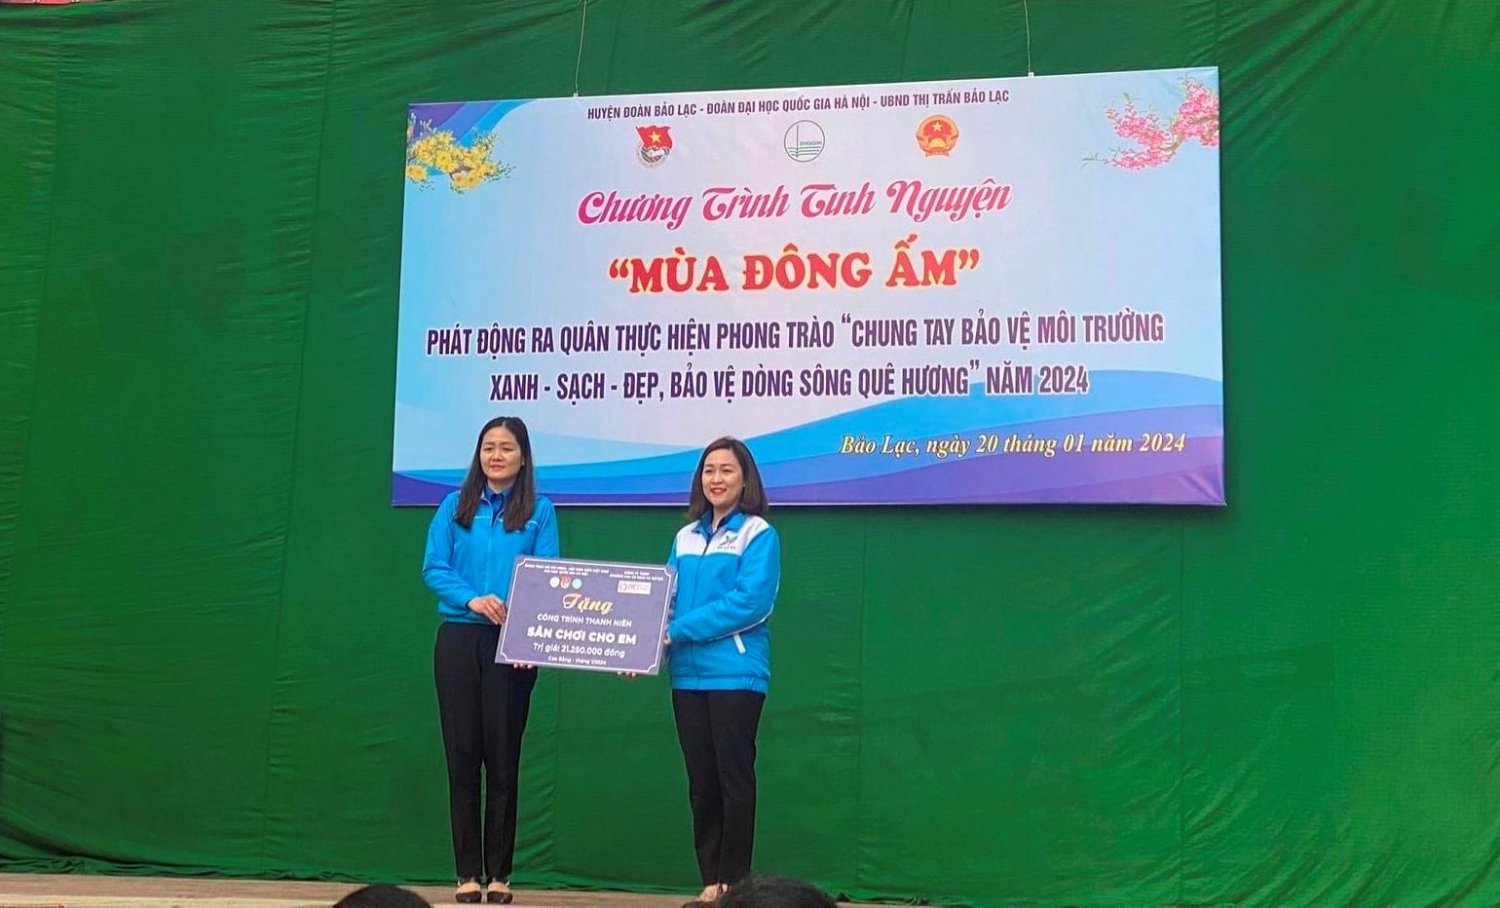 Đoàn ĐHQGHN trao tặng công trình thanh niên Thắp sáng đường quê" và "Sân chơi cho em" cho Huyện Đoàn Bảo Lạc.